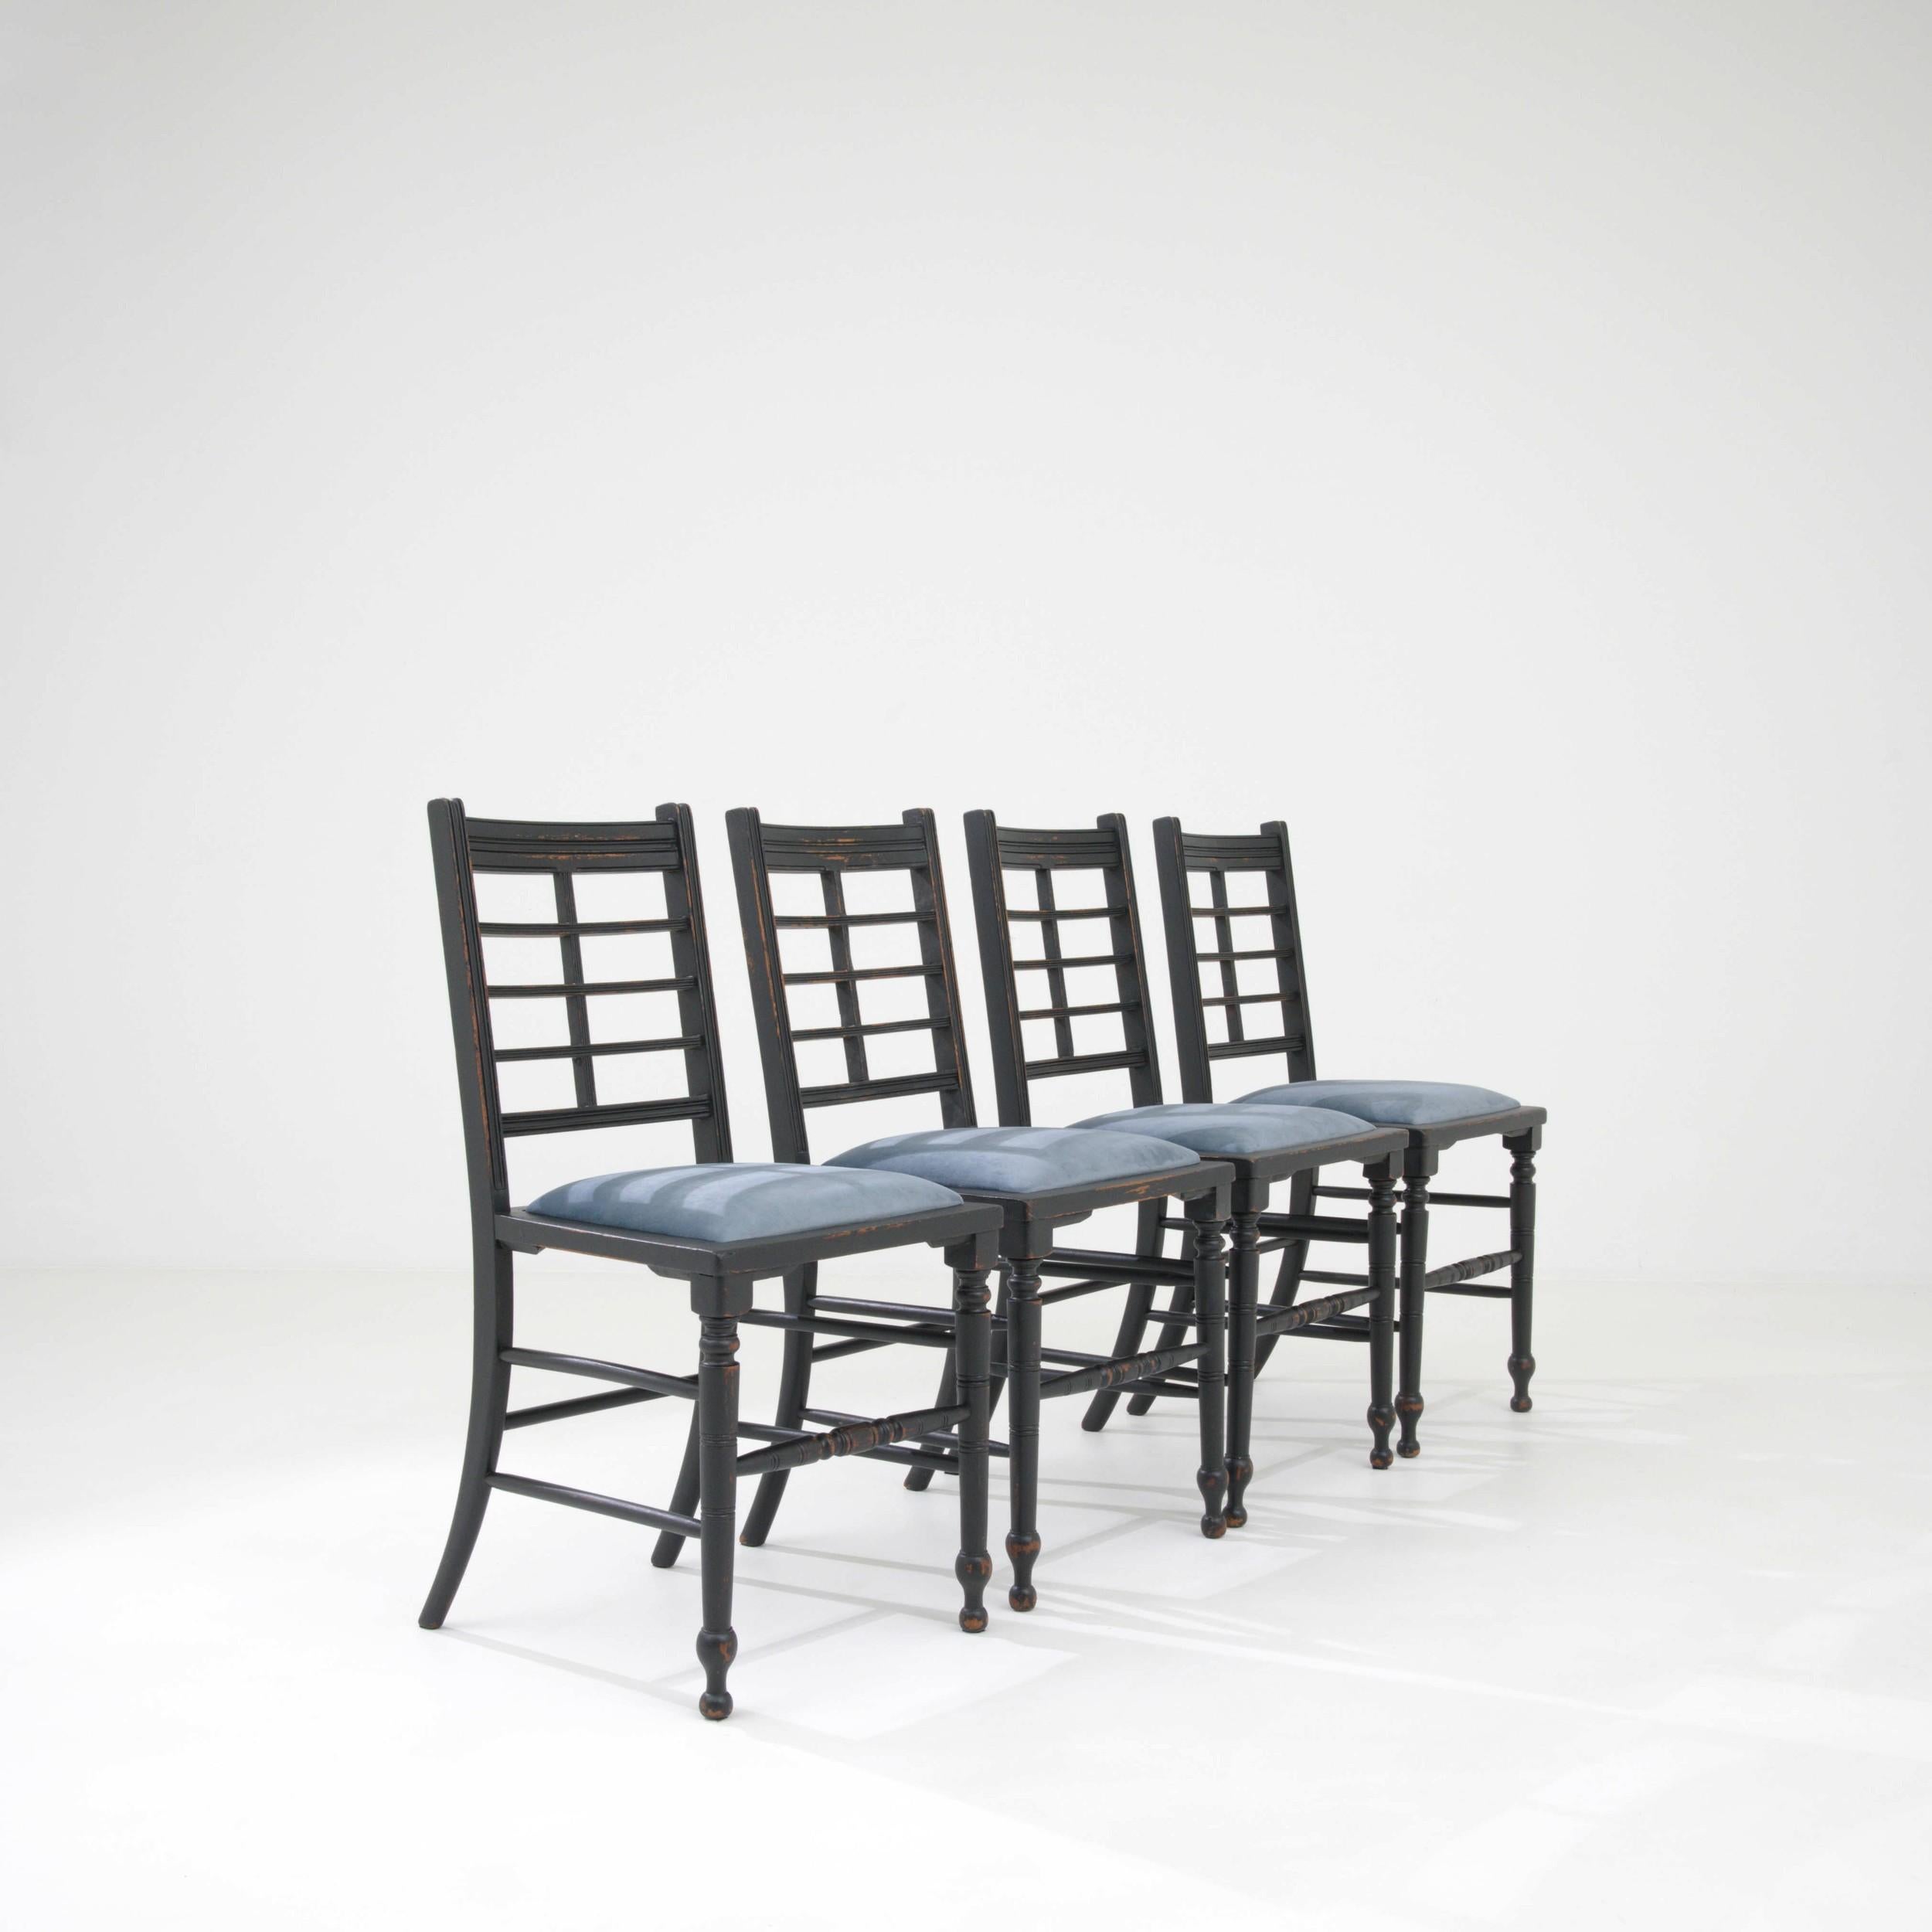 Dieses Set aus vier Stühlen wurde im 19. Jahrhundert im Vereinigten Königreich hergestellt und besteht aus Holz und einem gepolsterten Kissen. Der raffinierte Stil dieser Stühle in Schwarz eignet sich für das Esszimmer oder als optischer Akzent für